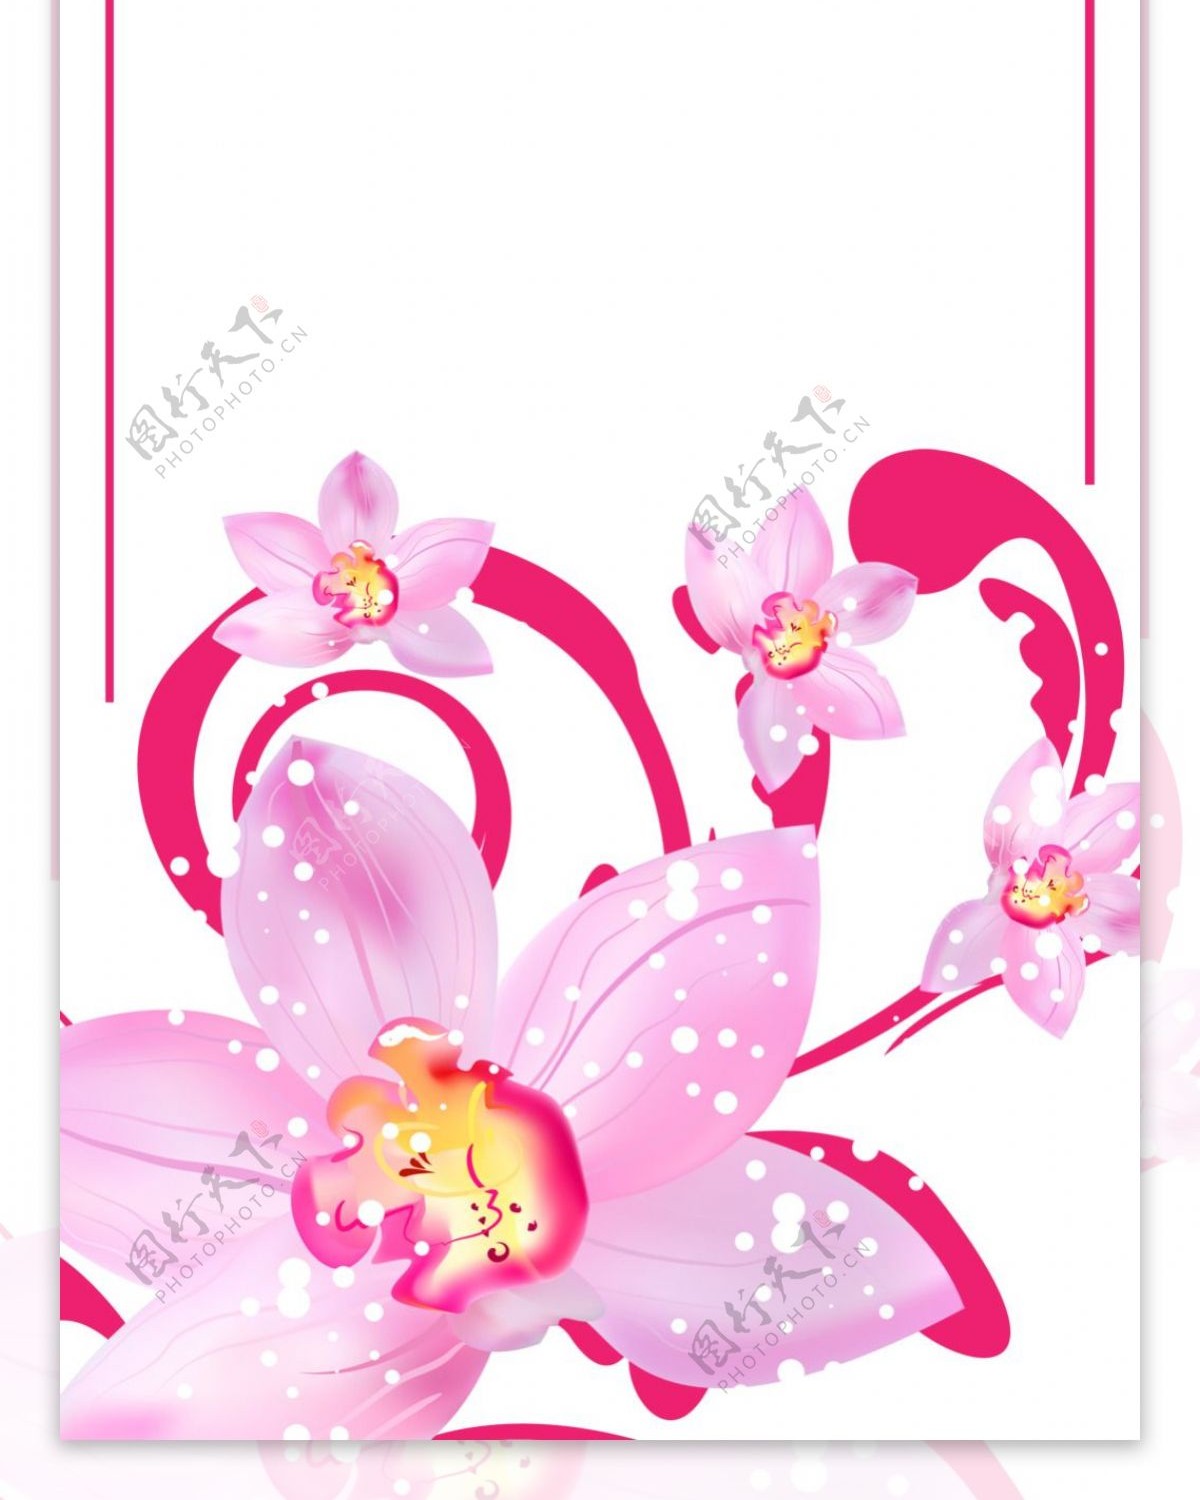 精美粉色花儿素材展架海报设计画面元素